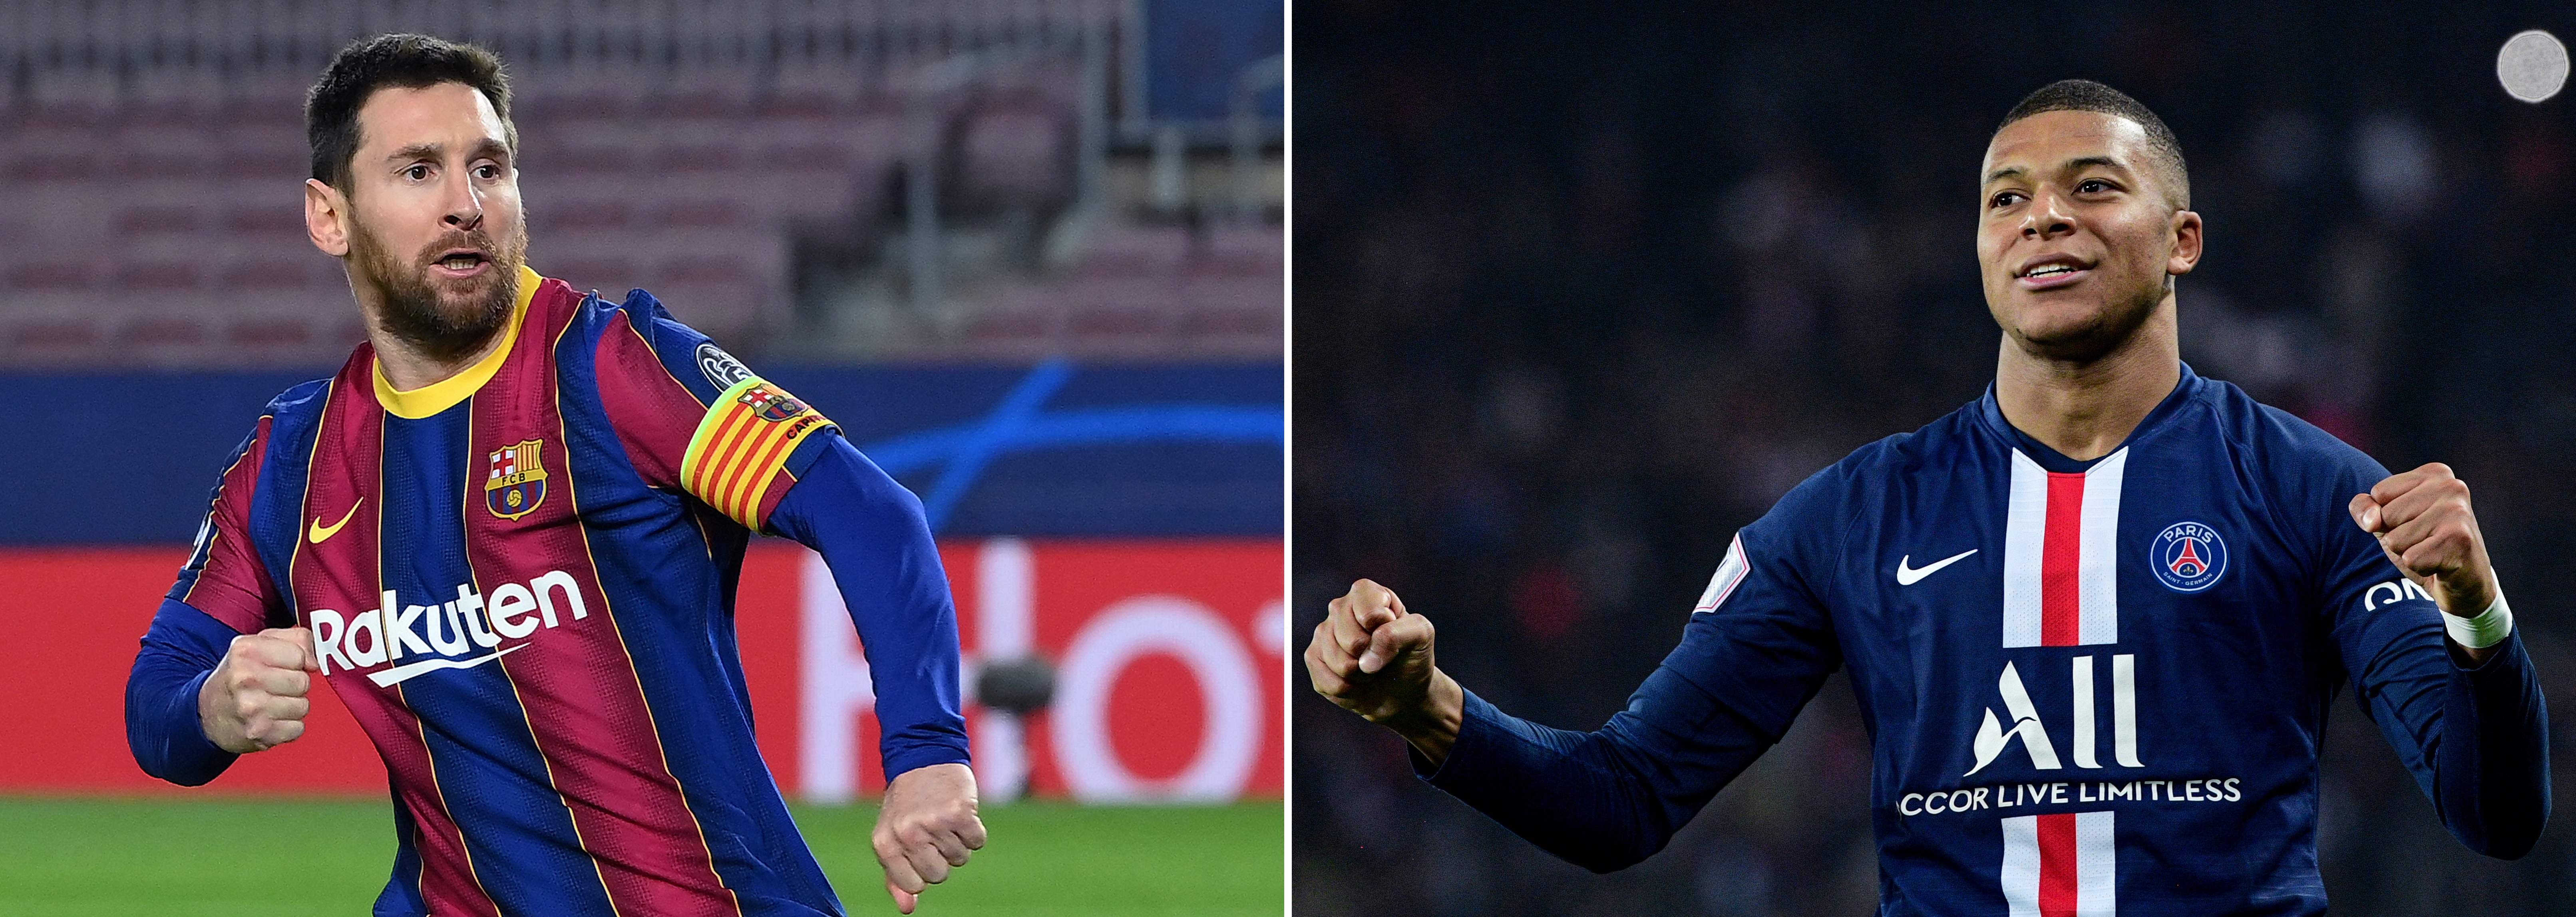 ¿Lionel Messi o Kylian Mbappe?  El primer duelo lo ganó el joven francés con un triplete. Ahora es el turno de Messi de buscar una remontada casi imposible. Foto Prensa Libre: AFP.